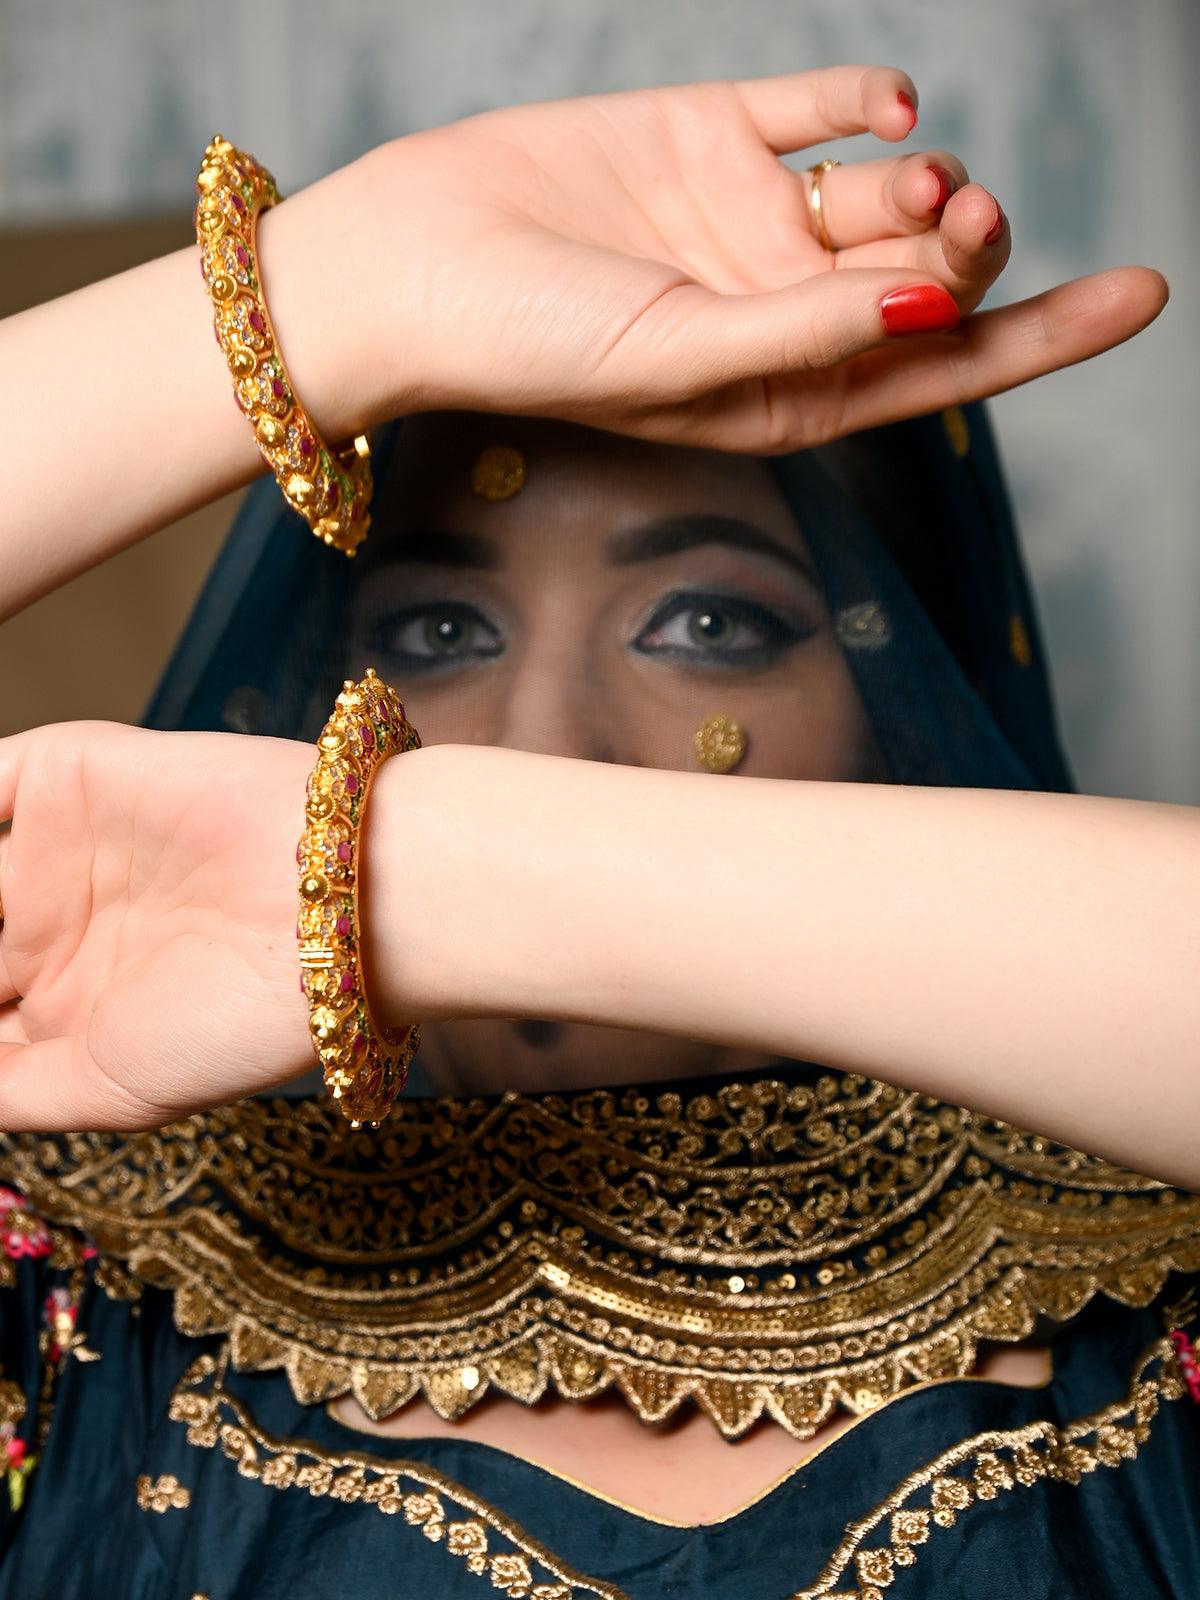 Women's Stunning Multicolored Ethnic Bracelet - Odette